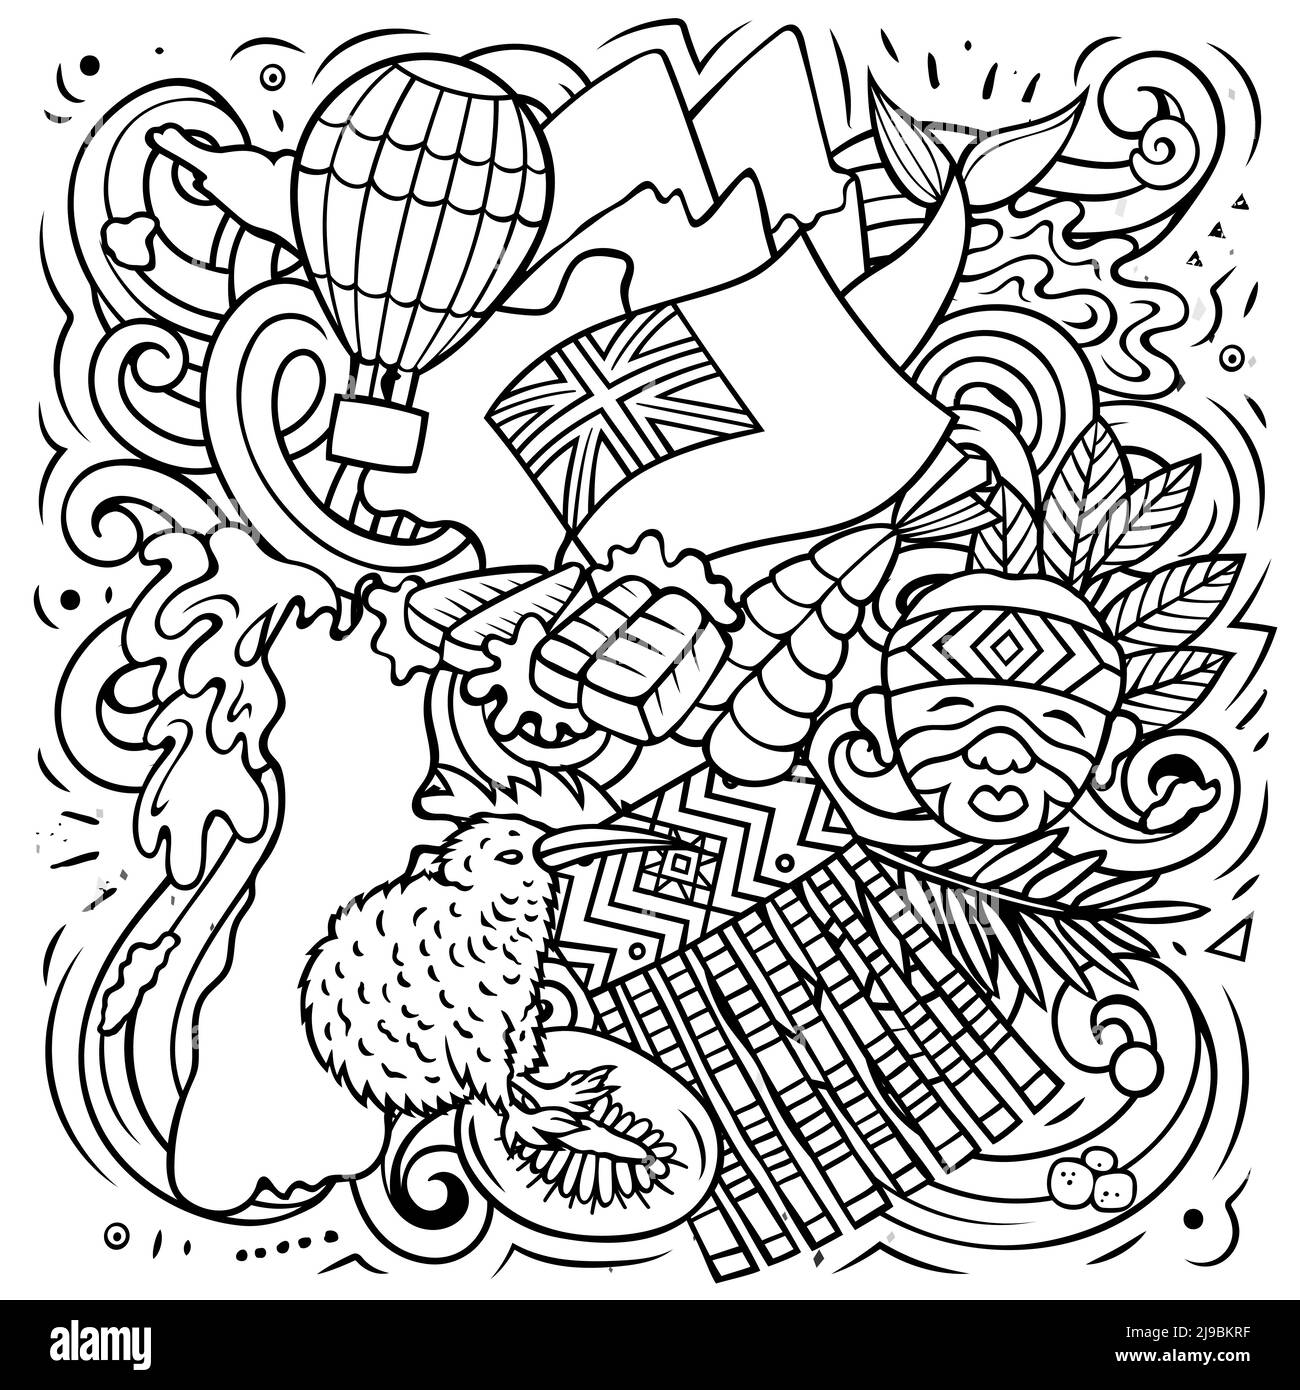 Nuova Zelanda disegno a mano cartoon doodle illustrazione. Divertente design locale. Illustrazione Vettoriale